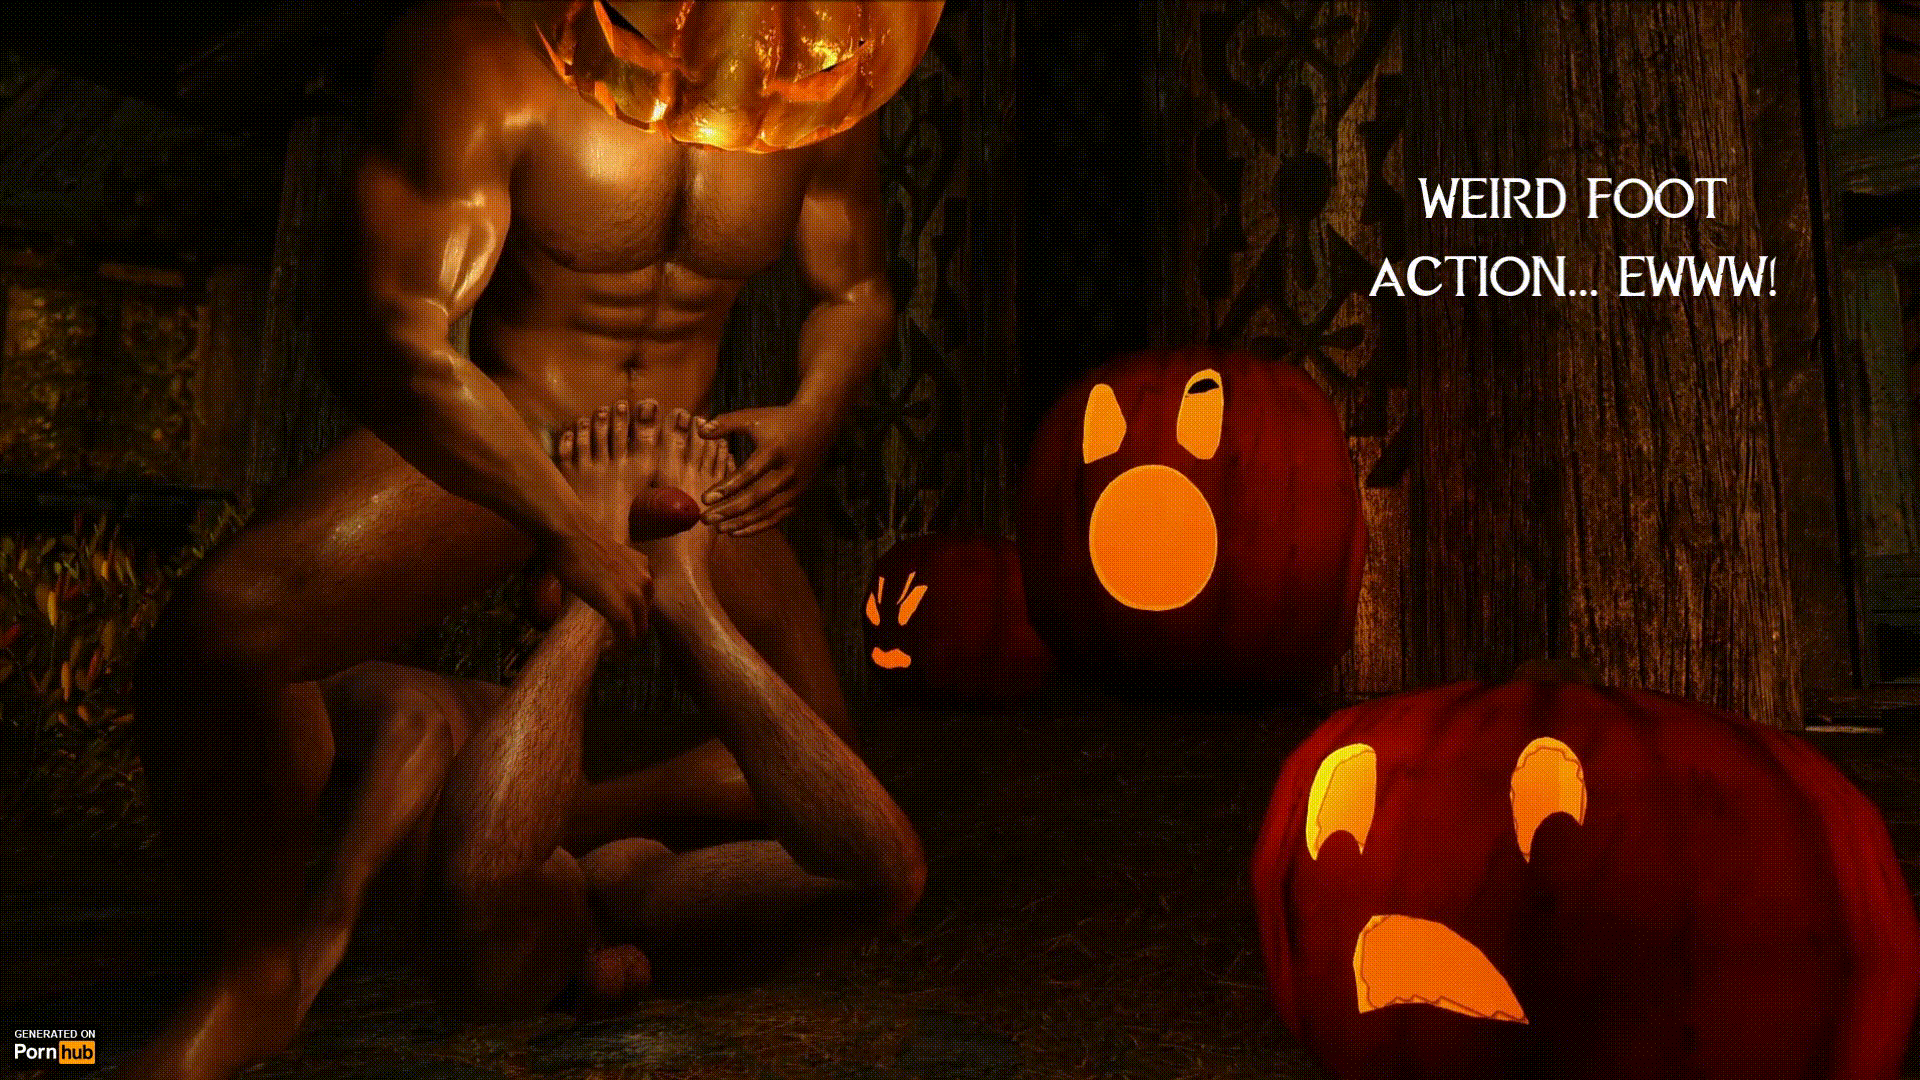 1920px x 1080px - Halloween Porn Gif | Pornhub.com